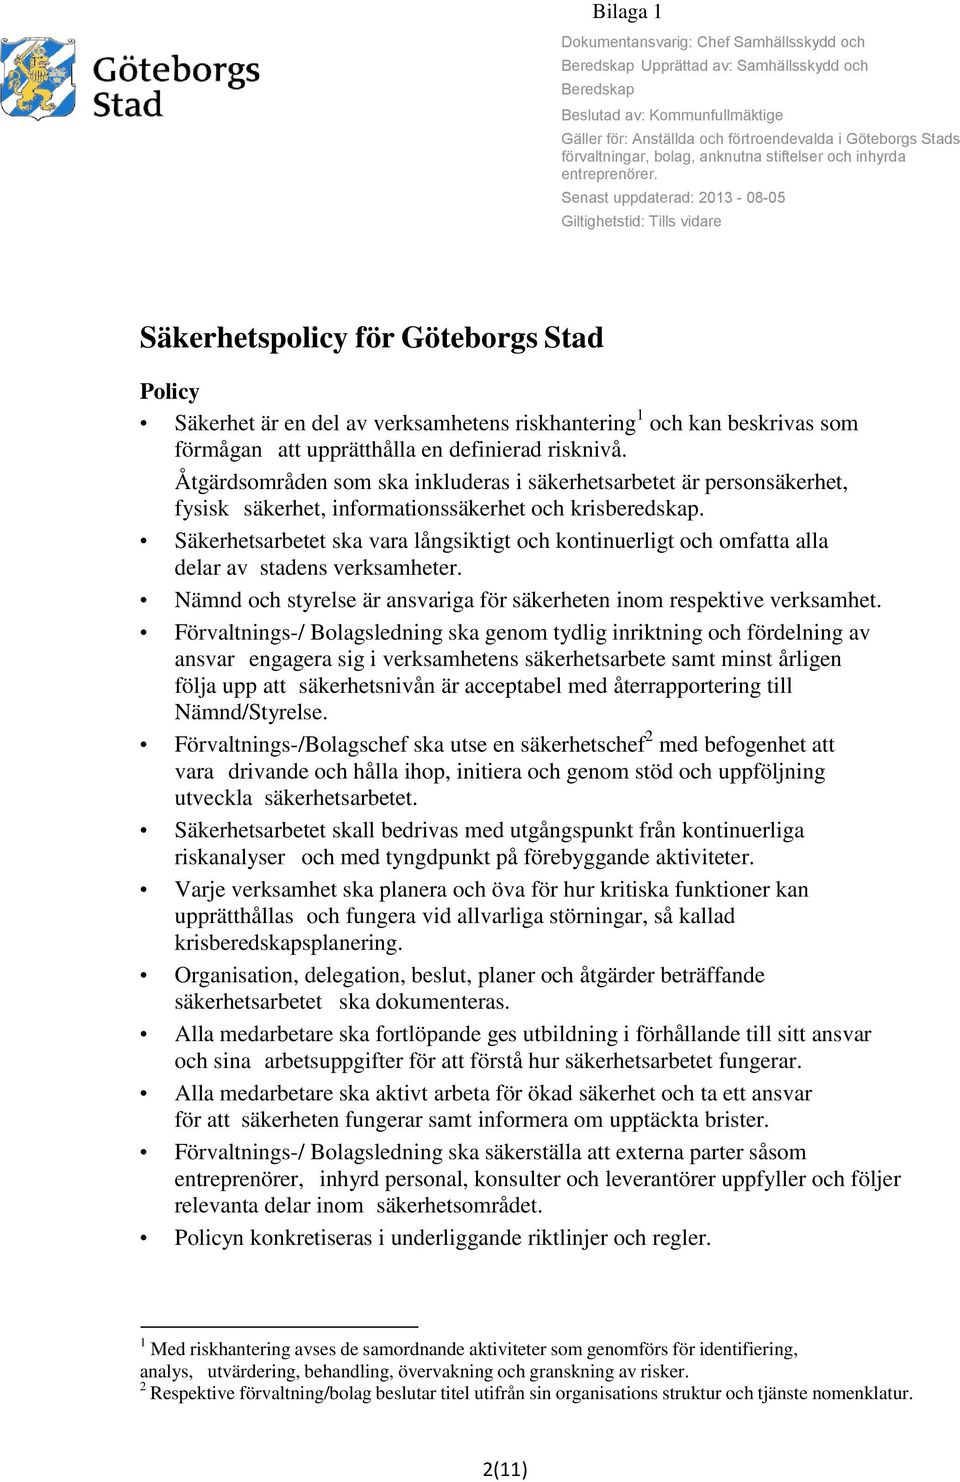 Senast uppdaterad: 2013-08-05 Giltighetstid: Tills vidare Säkerhetspolicy för Göteborgs Stad Policy Säkerhet är en del av verksamhetens riskhantering 1 och kan beskrivas som förmågan att upprätthålla